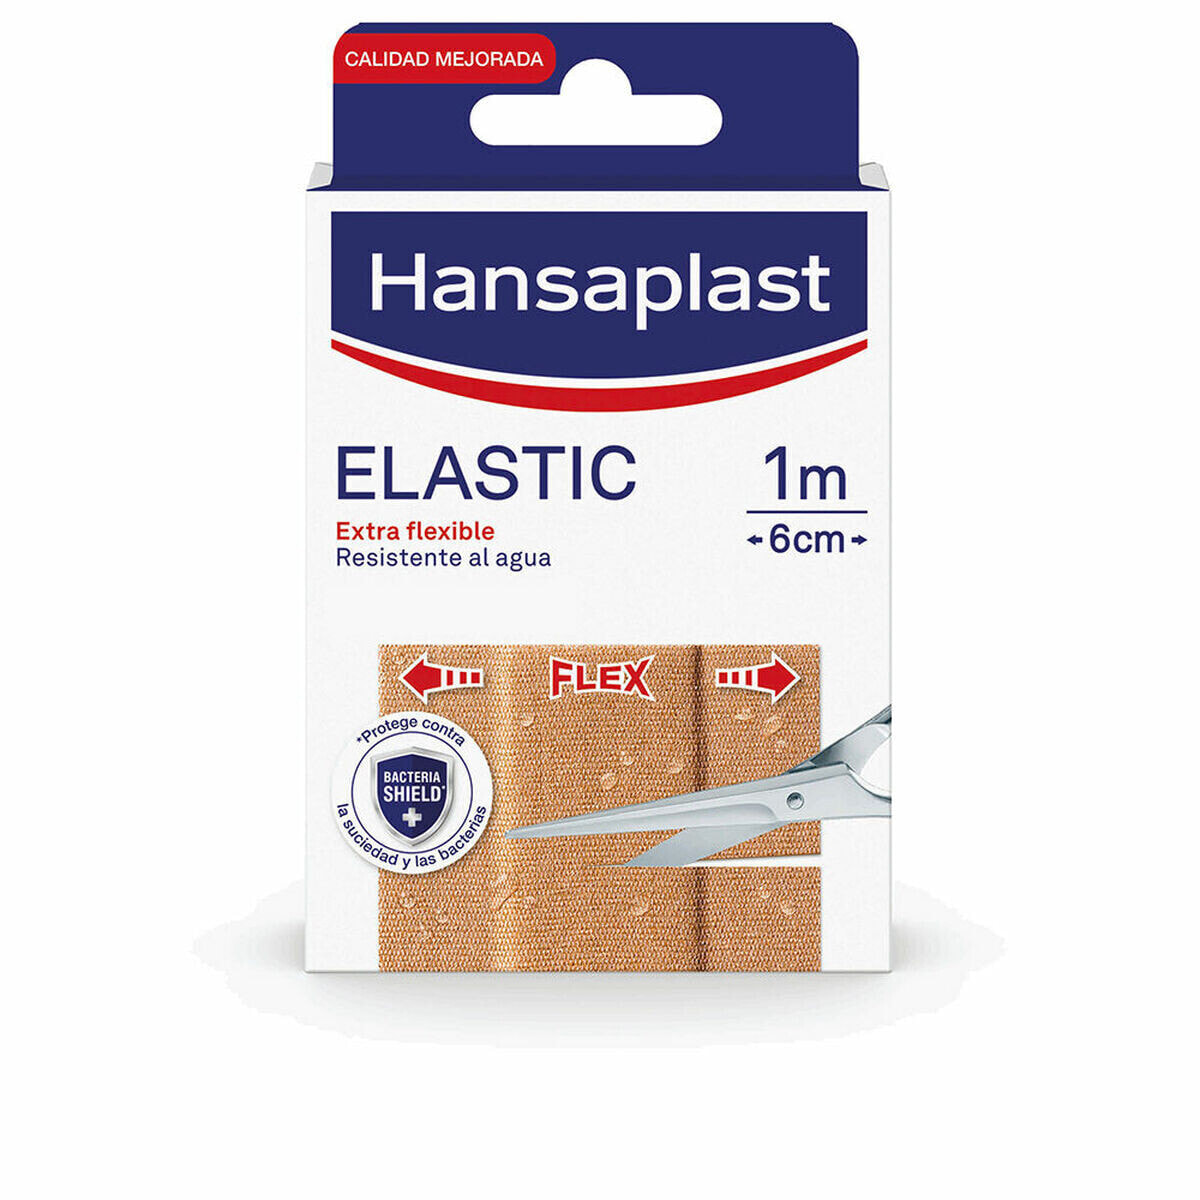 Plasters Hansaplast Hp Elastic 1 m x 6 cm 1 Unit